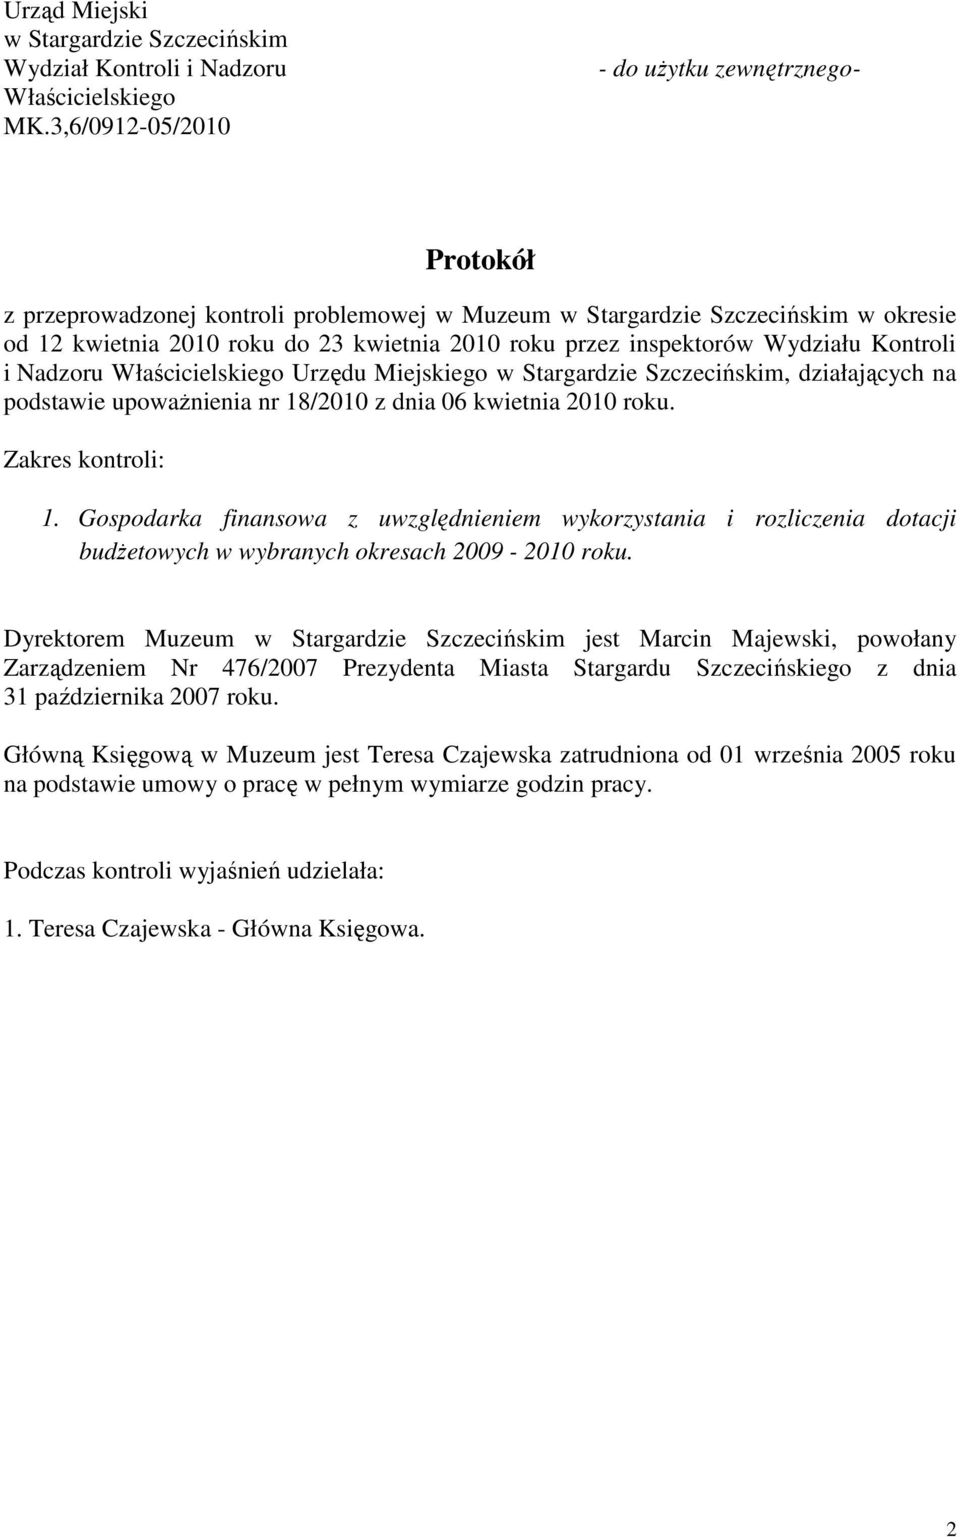 inspektorów Wydziału Kontroli i Nadzoru Właścicielskiego Urzędu Miejskiego w Stargardzie Szczecińskim, działających na podstawie upoważnienia nr 18/2010 z dnia 06 kwietnia 2010 roku.